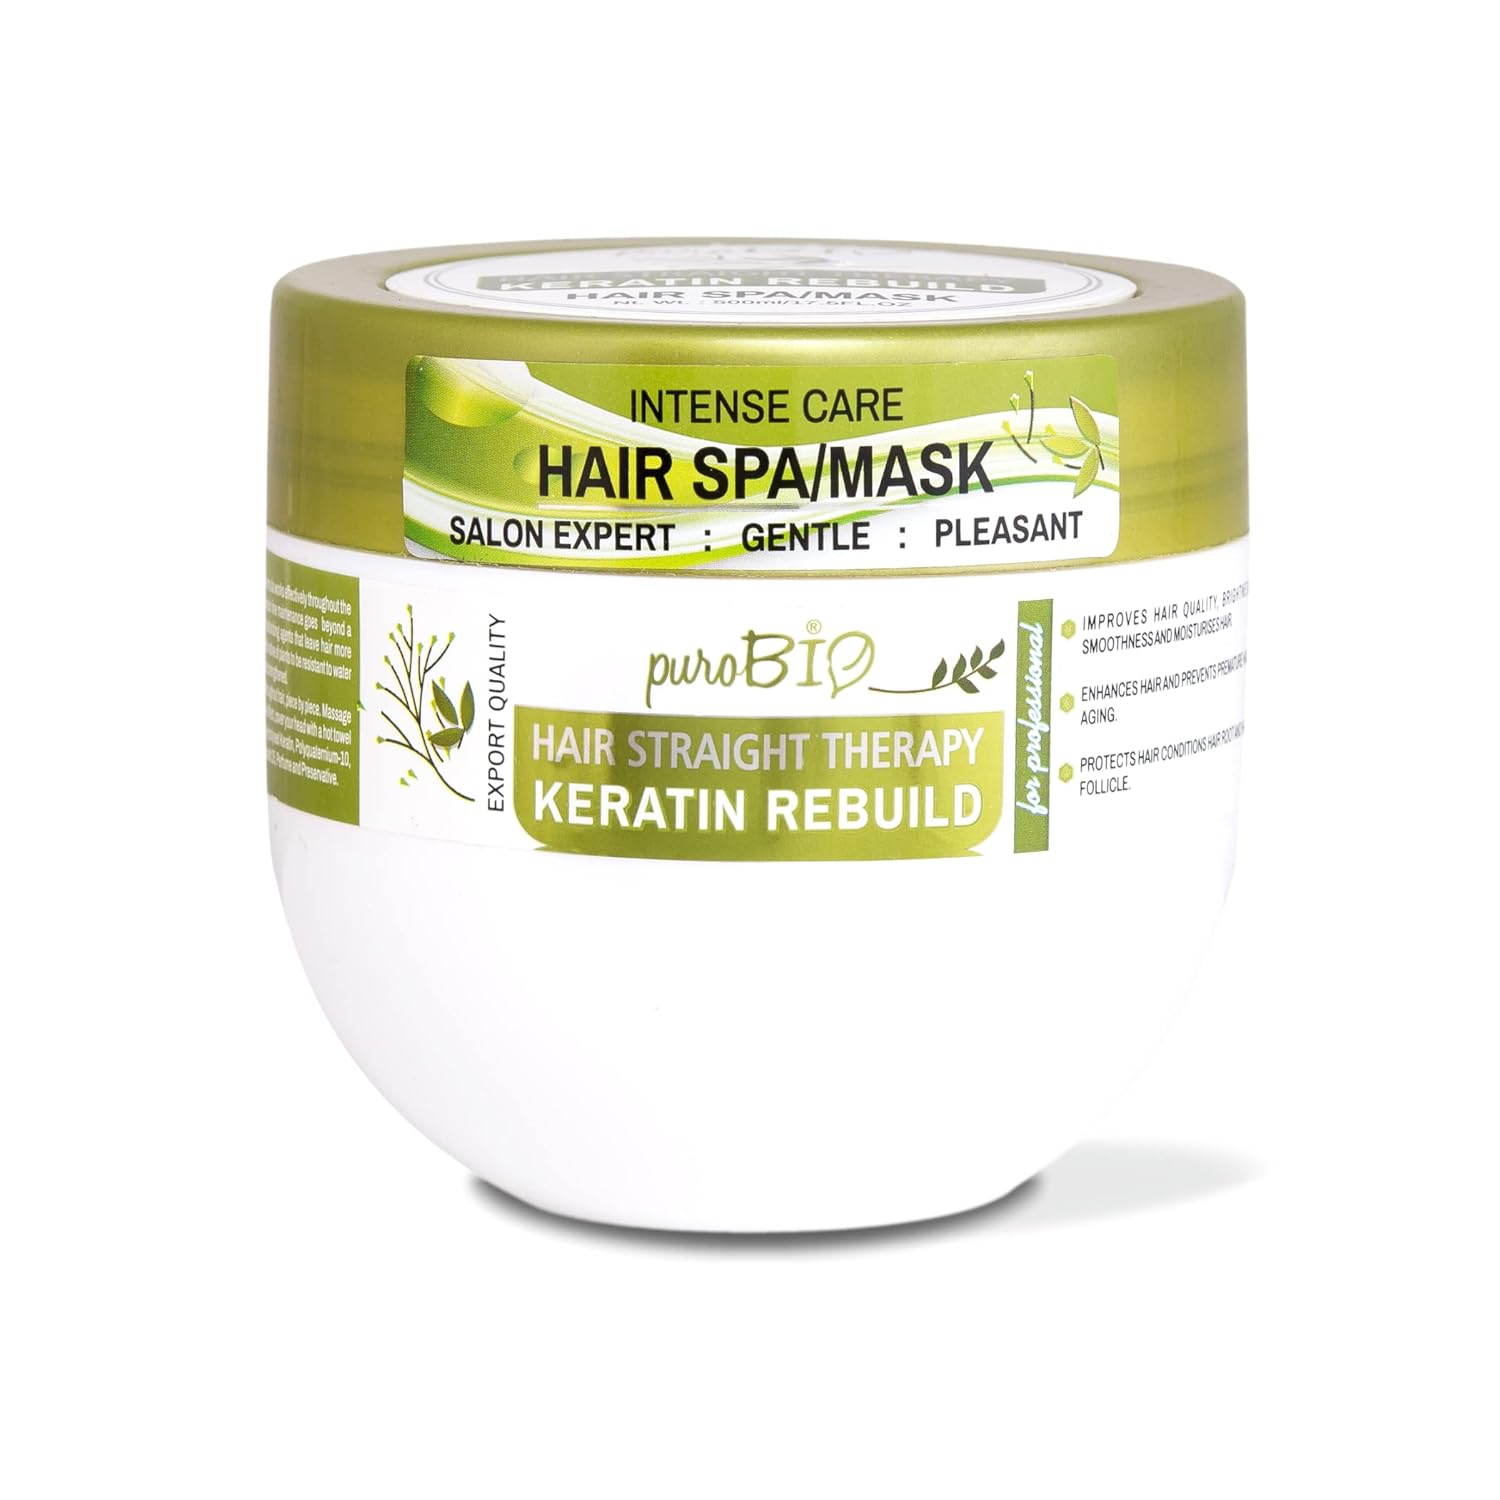 Sulphate Free Keratin Rebuild Hair Mask